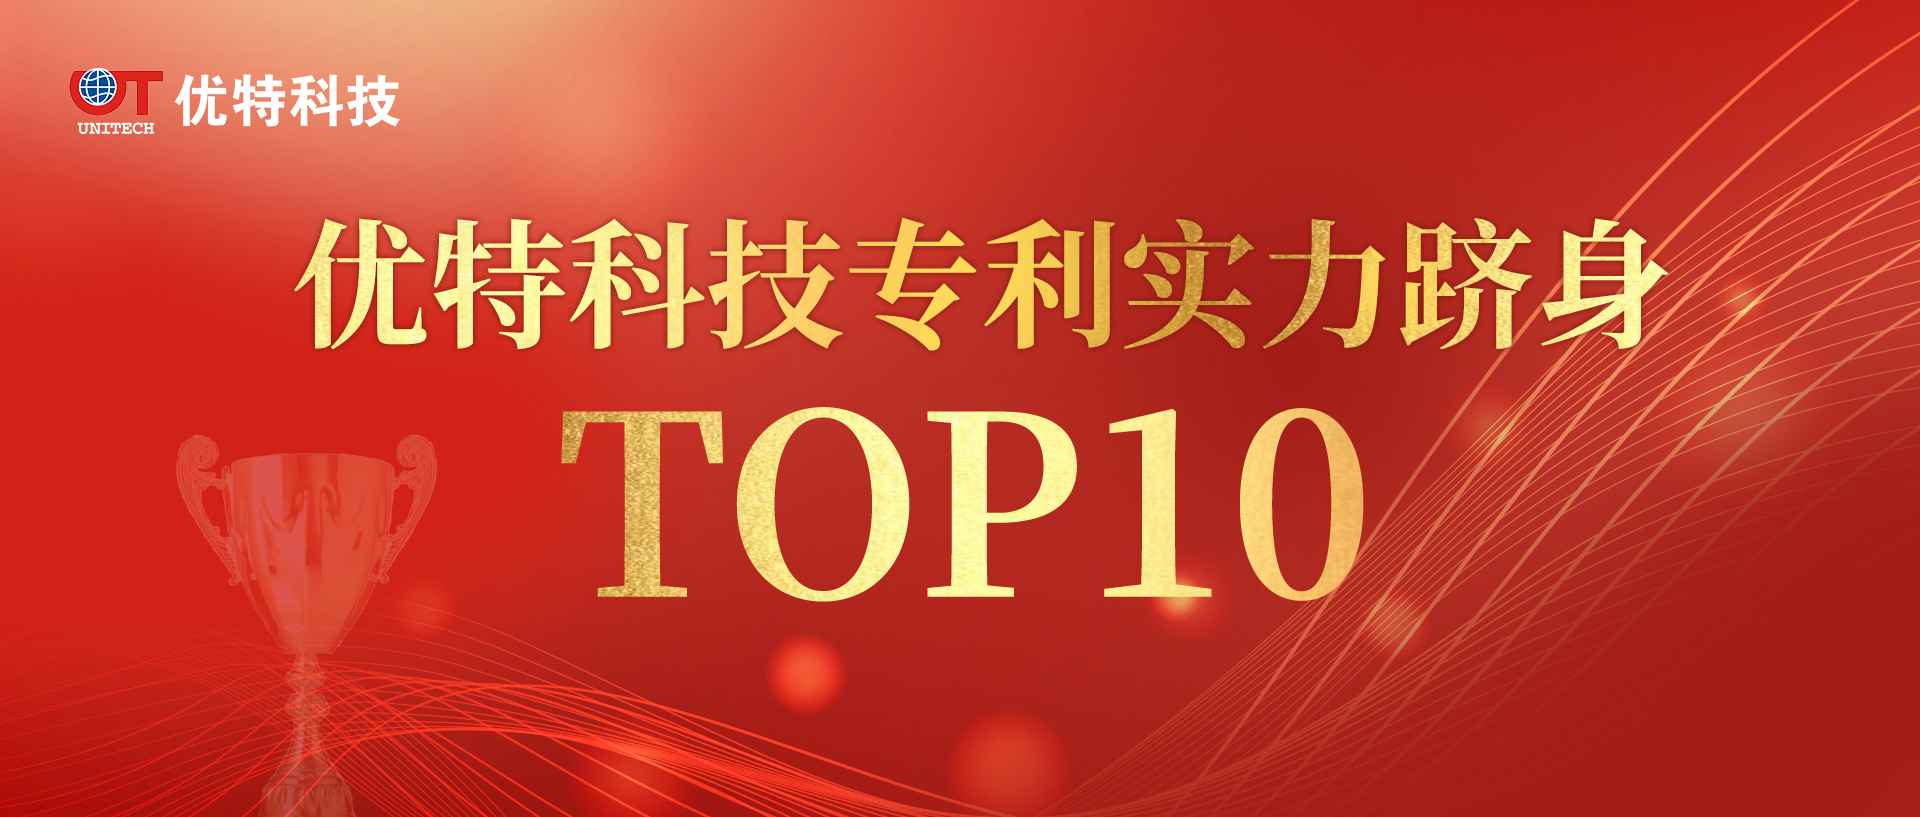 优特科技上榜专利实力TOP10